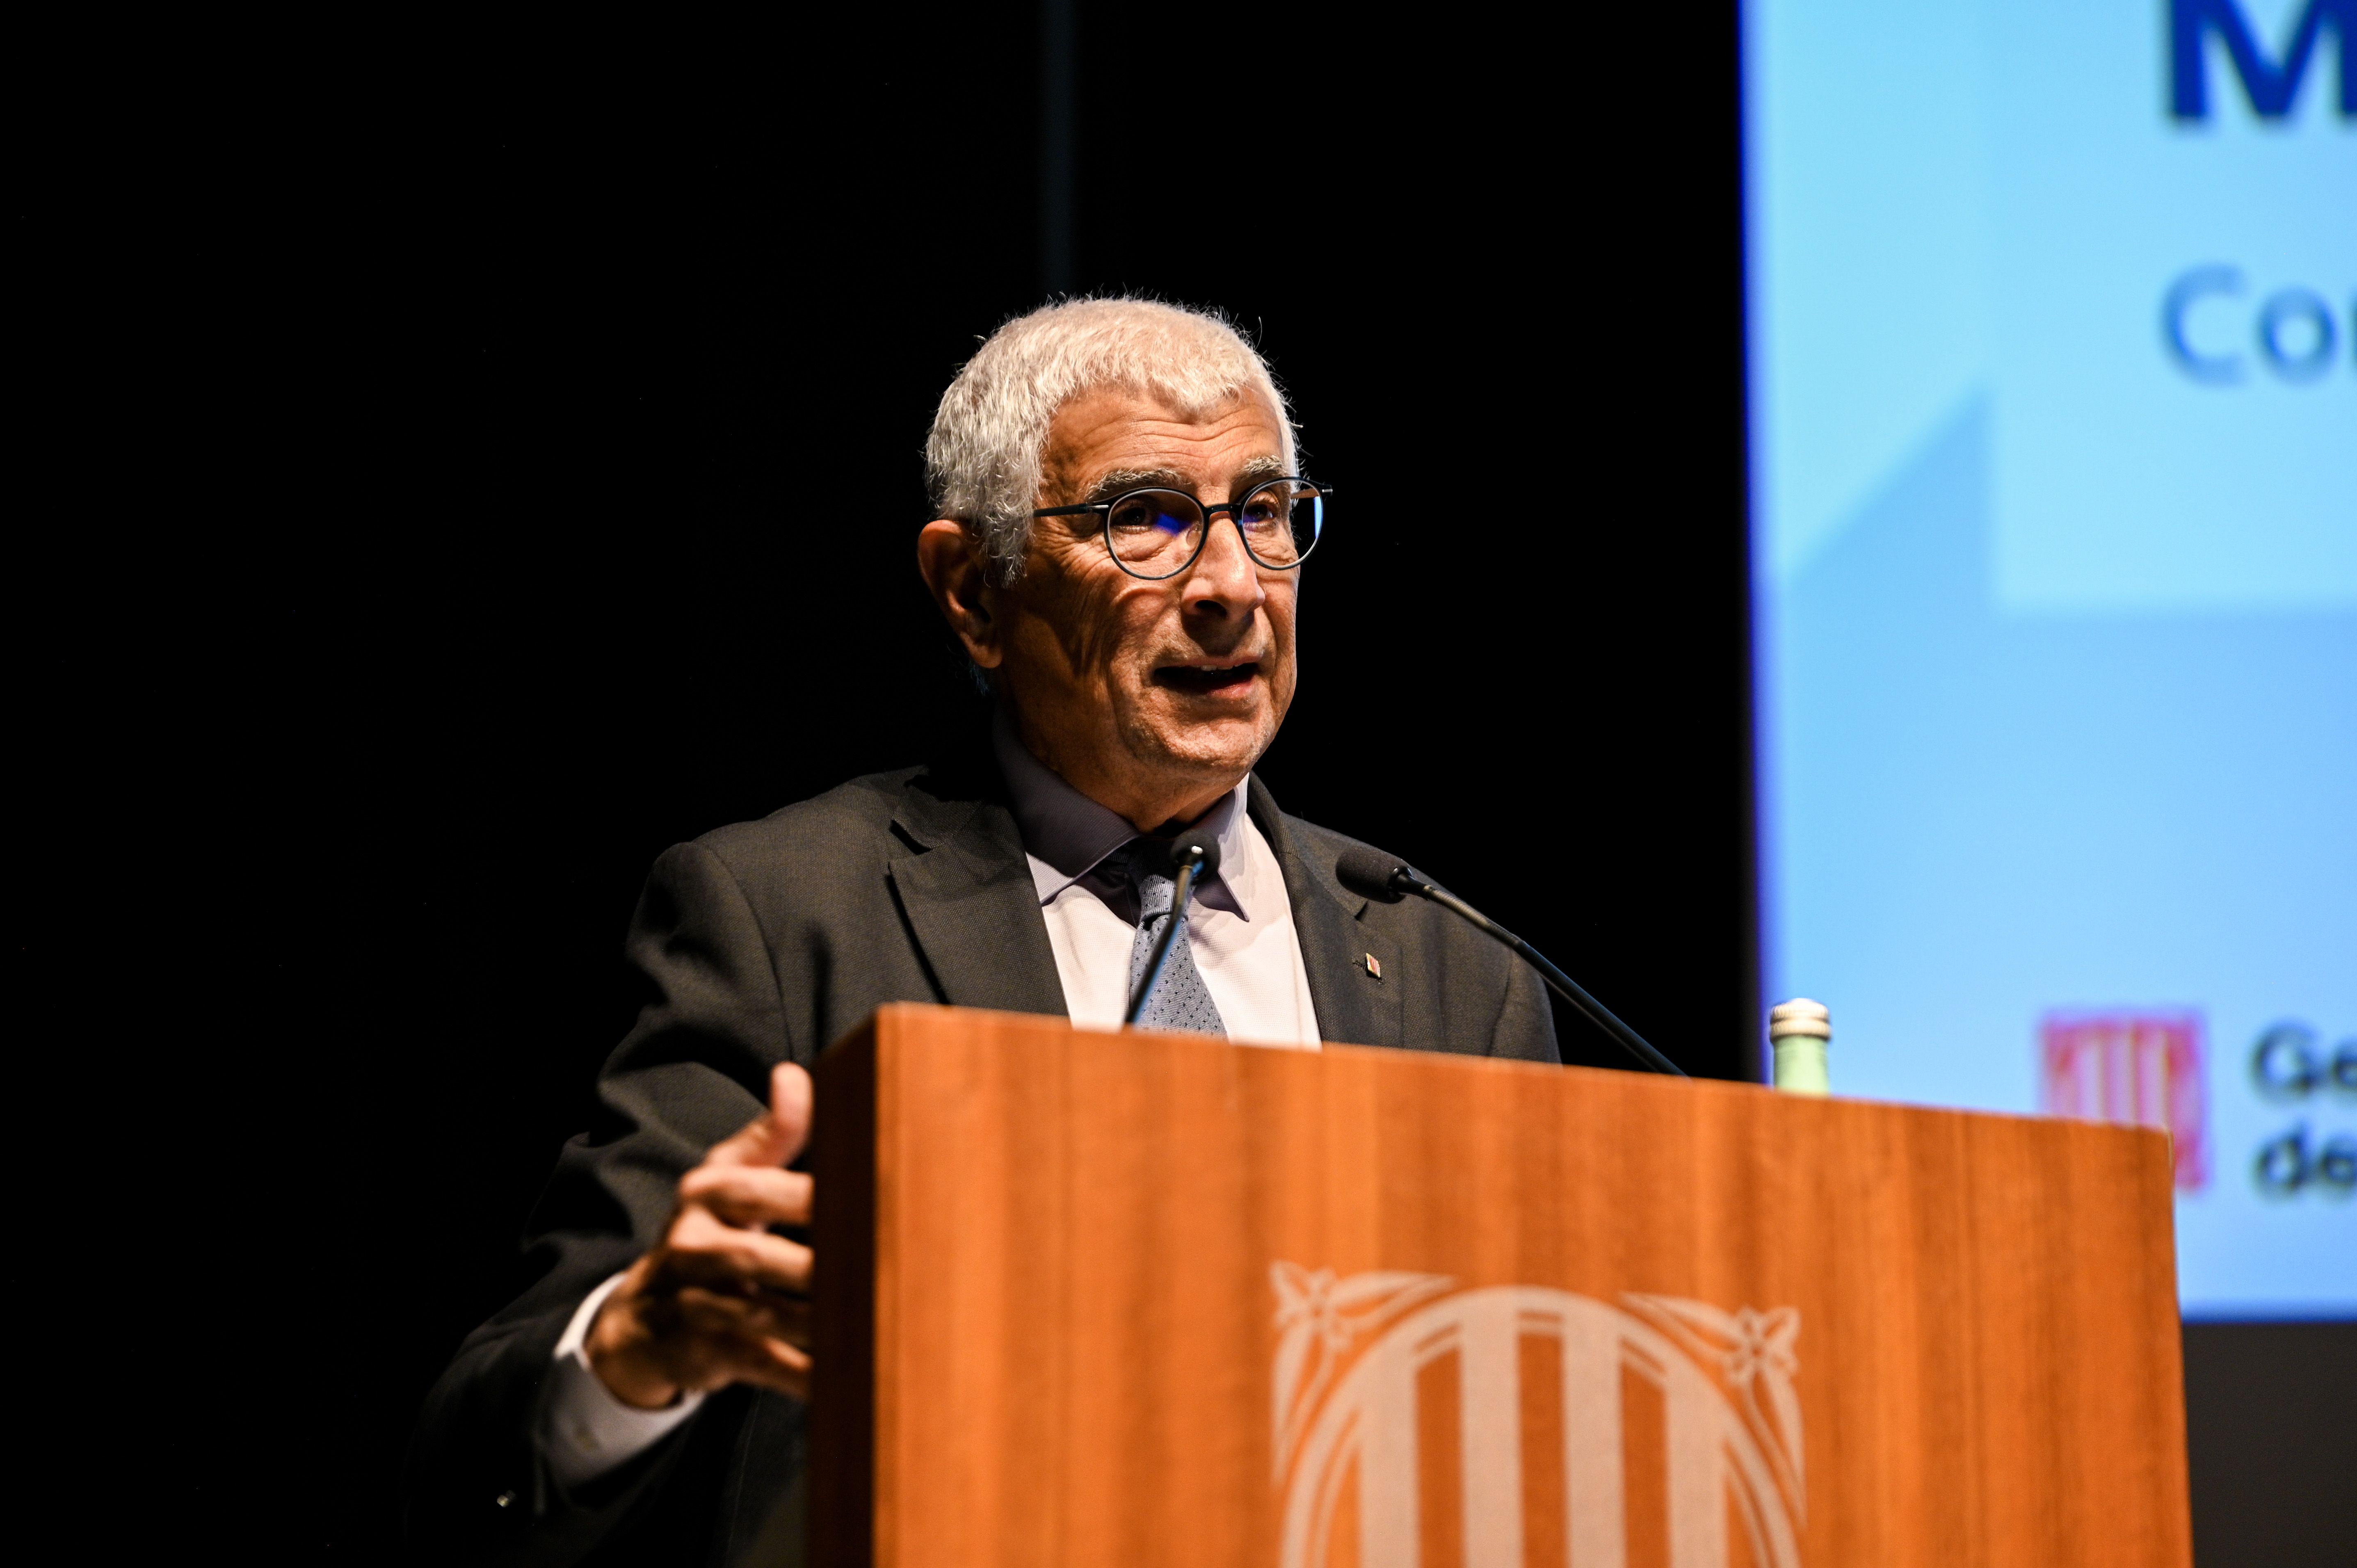 El conseller de Salut, Manel Balcells, durant l'acte de presentacio del Pla assistencial del Campus de Salut